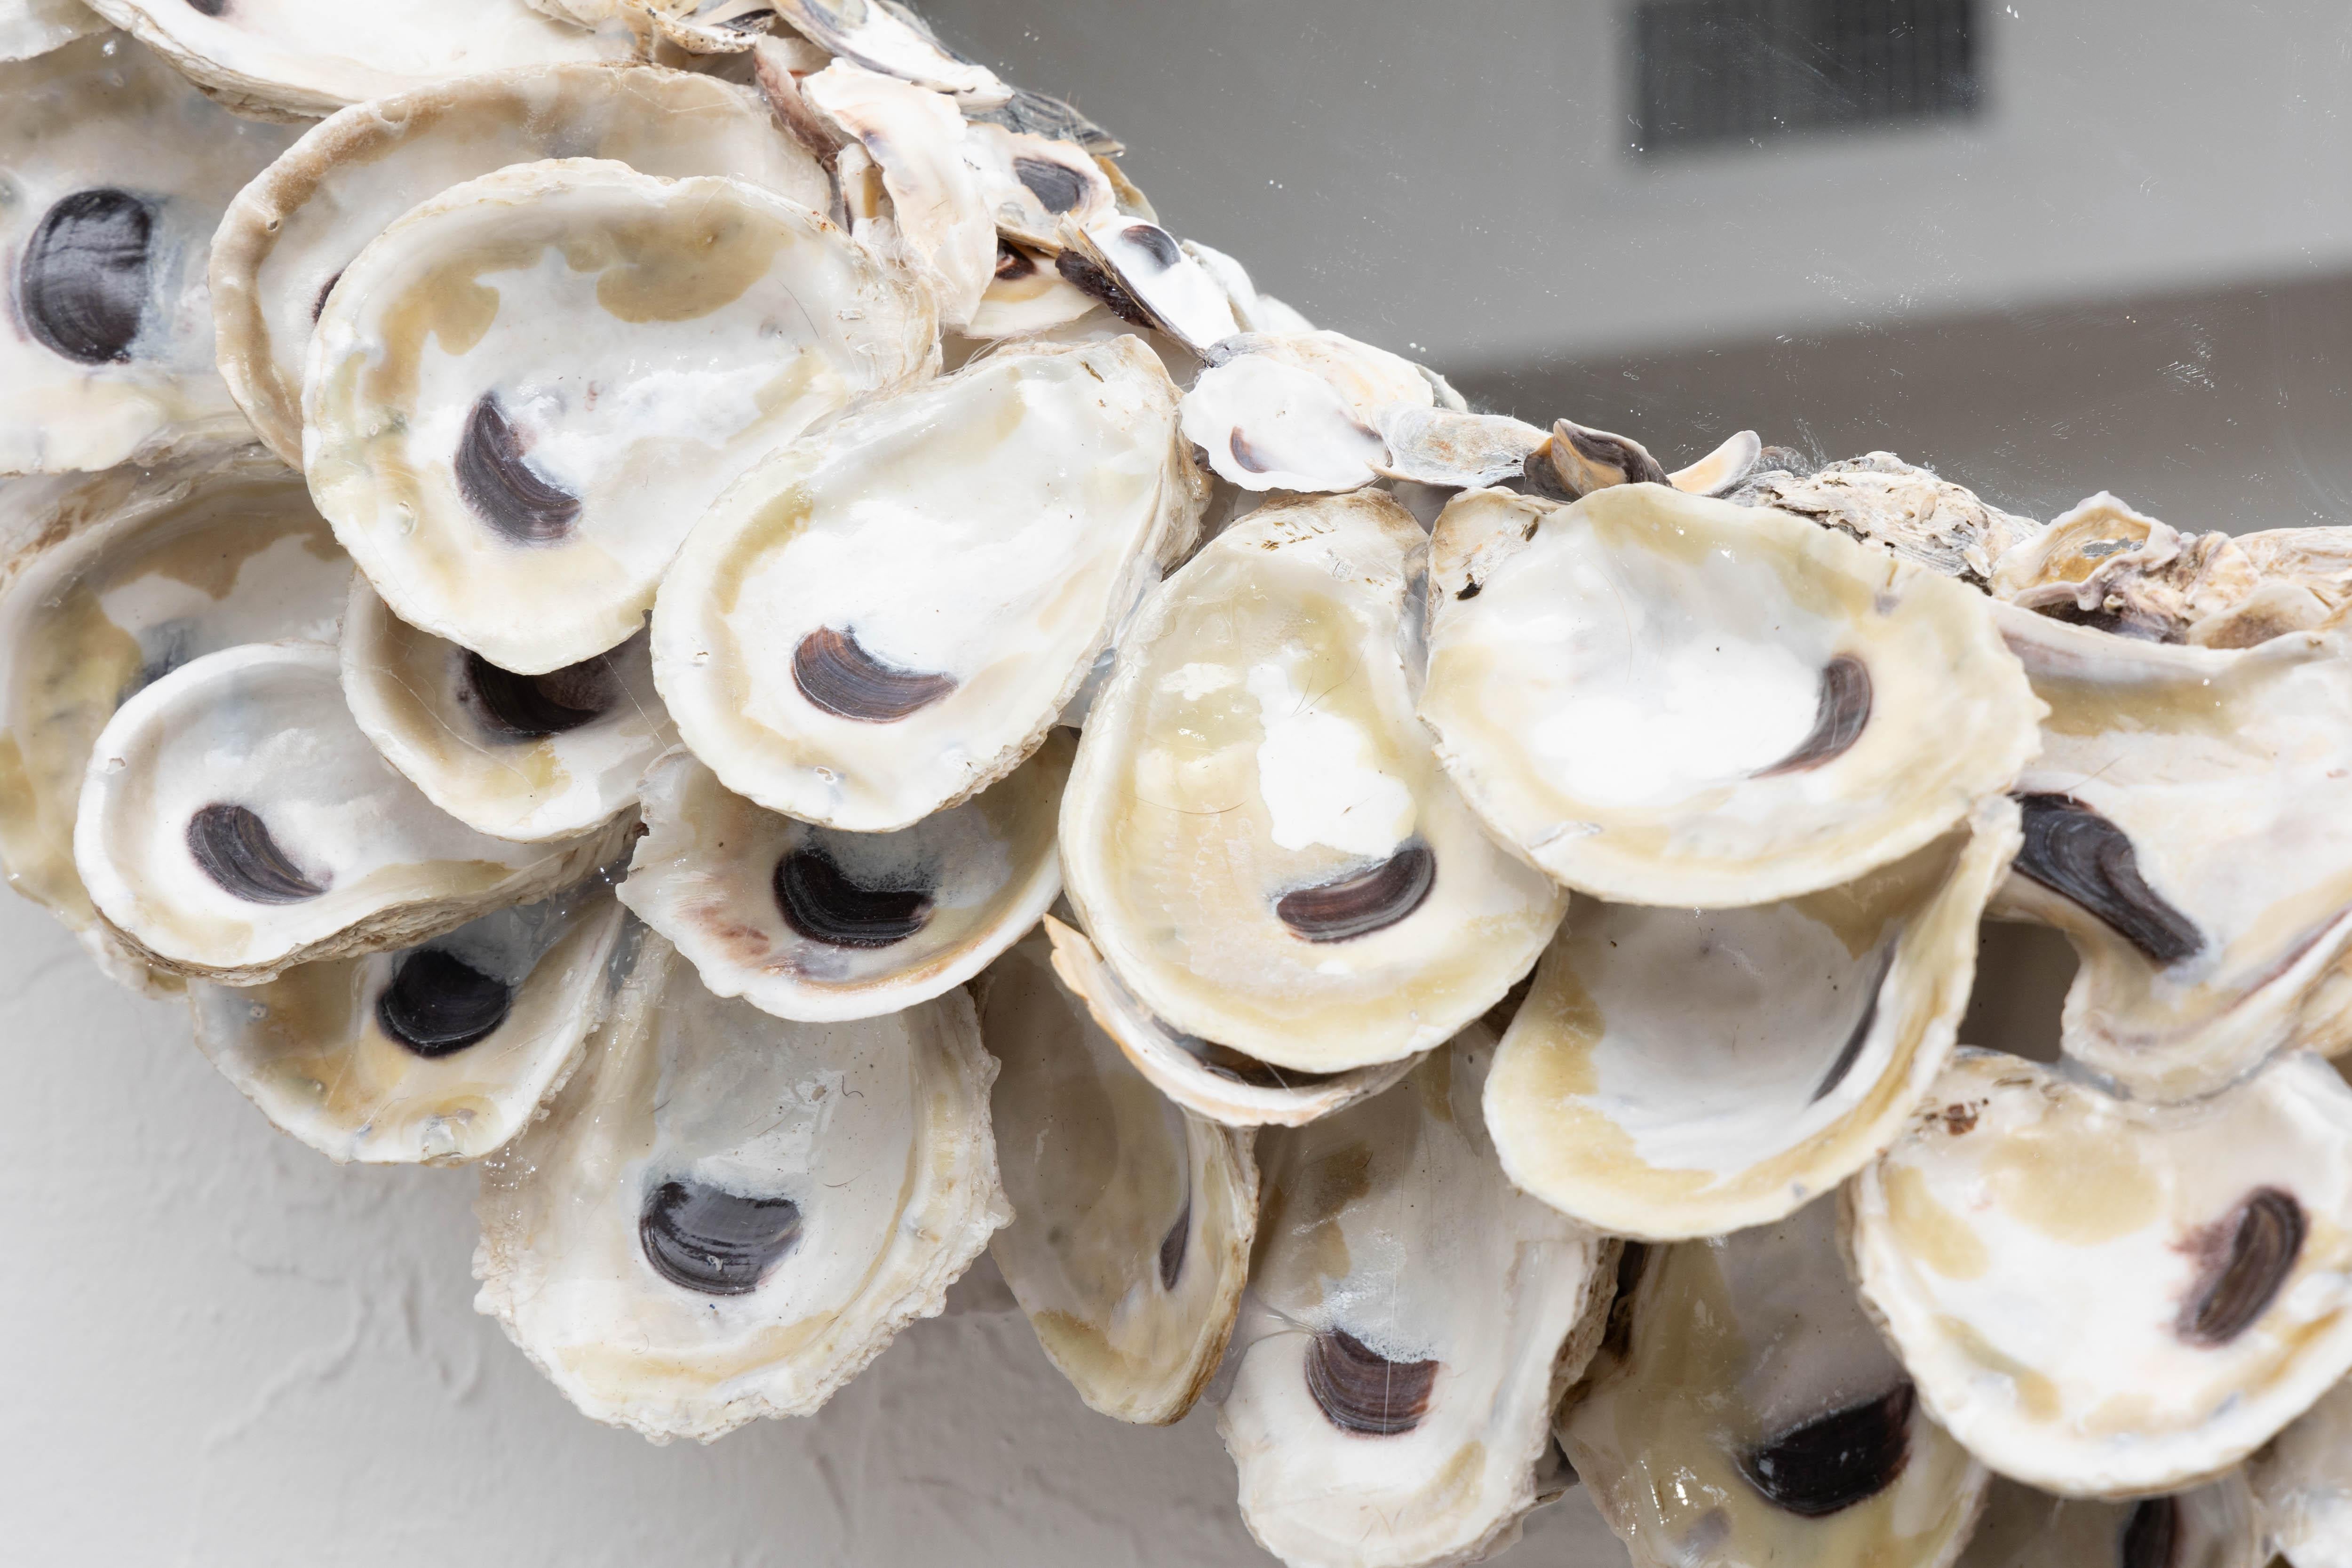 Il s'agit d'une superbe création personnalisée en forme de coquille d'huître. La plaque de miroir circulaire est entourée d'un cadre conforme constitué d'une symphonie de coquilles d'huîtres organiques.